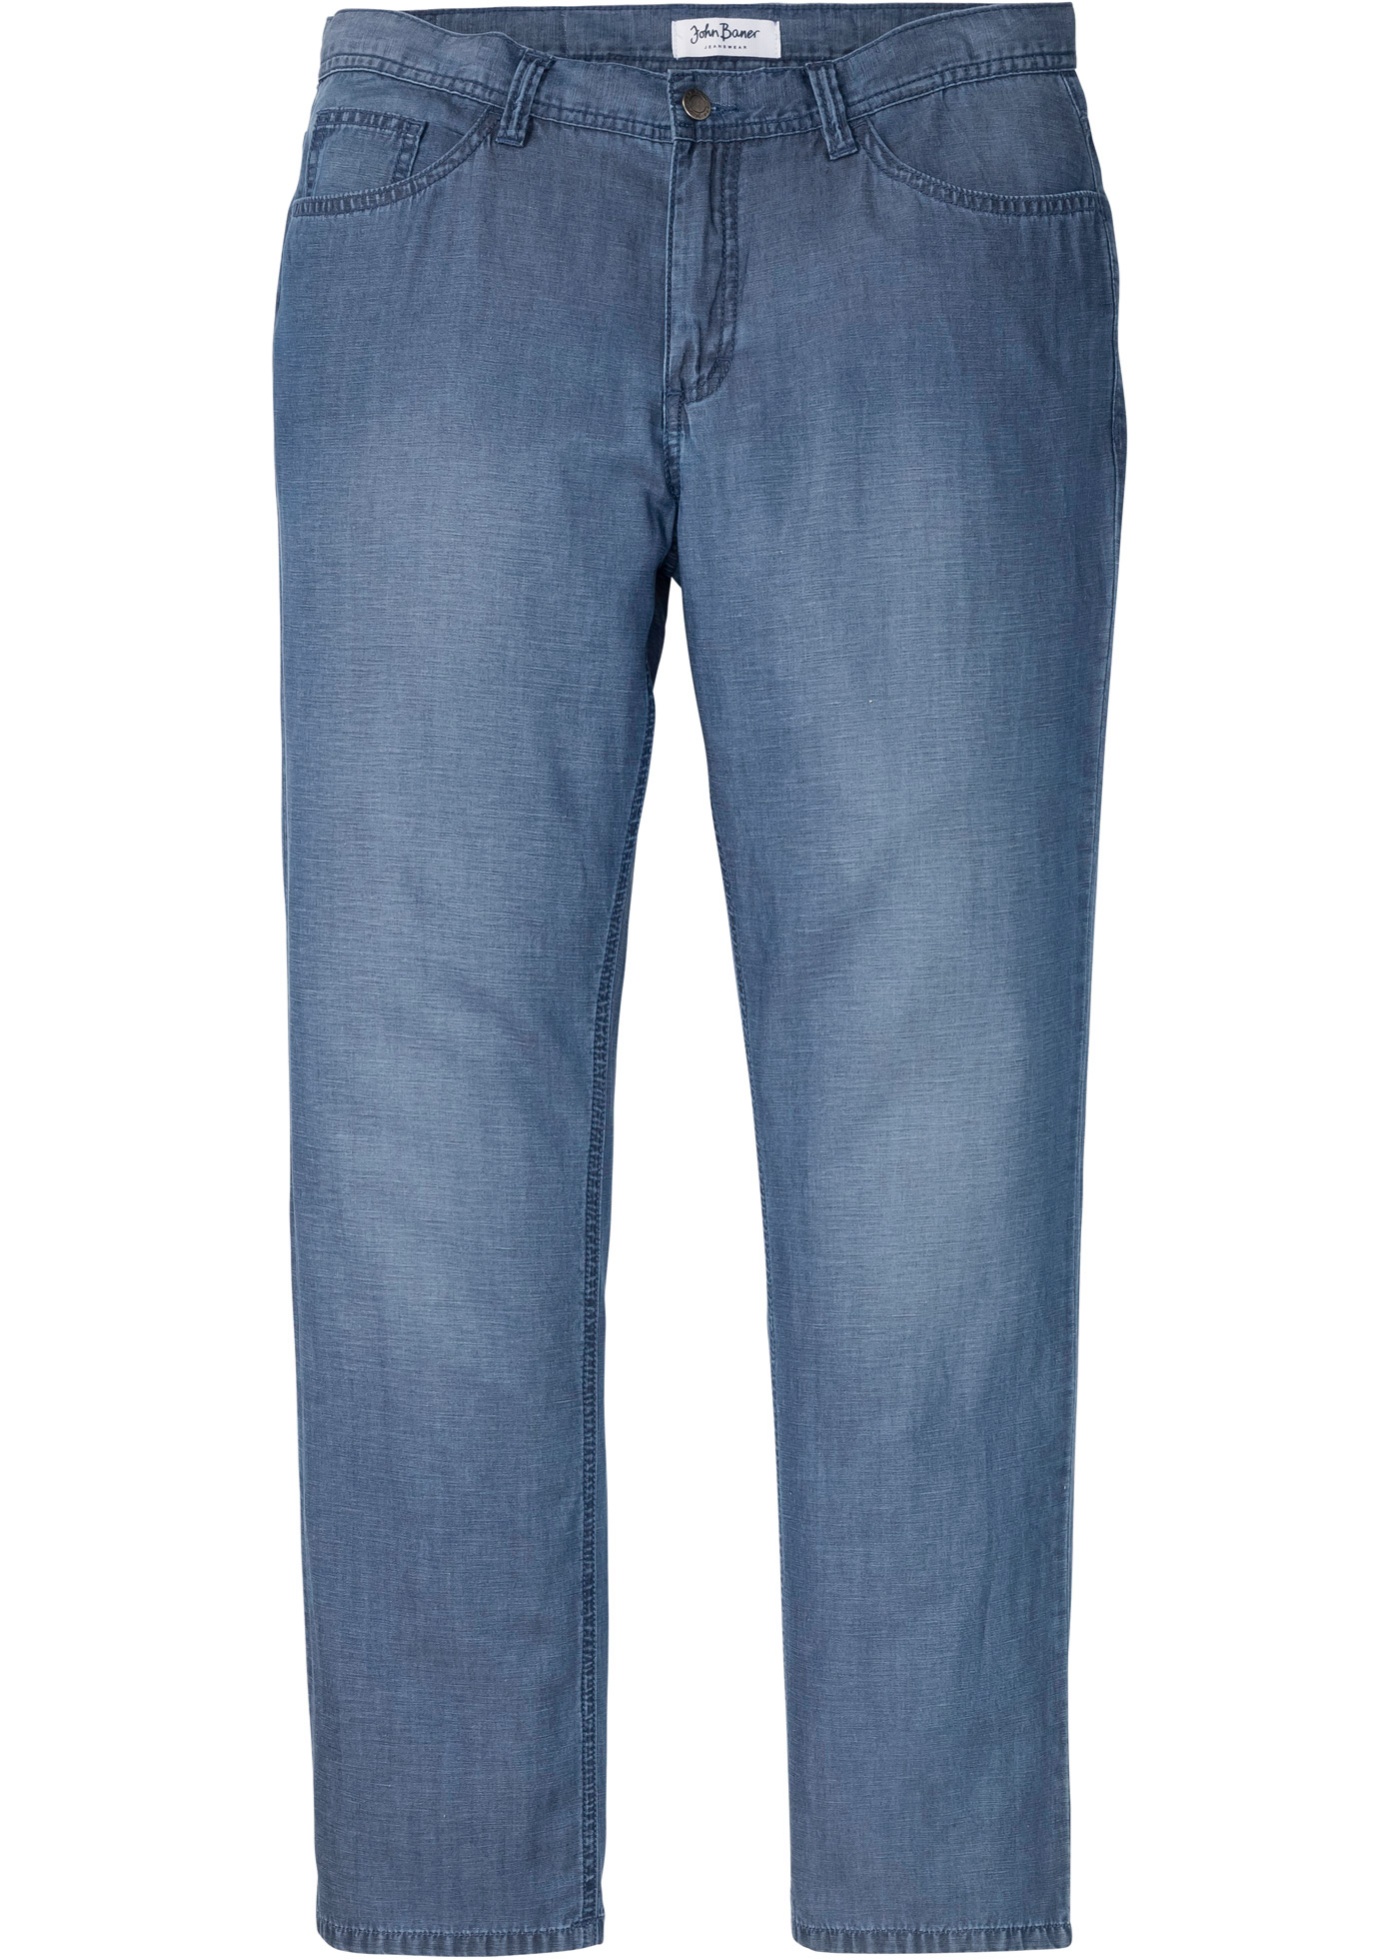 Bonprix - Regular fit jeans m. tencel™ und leinen, straight